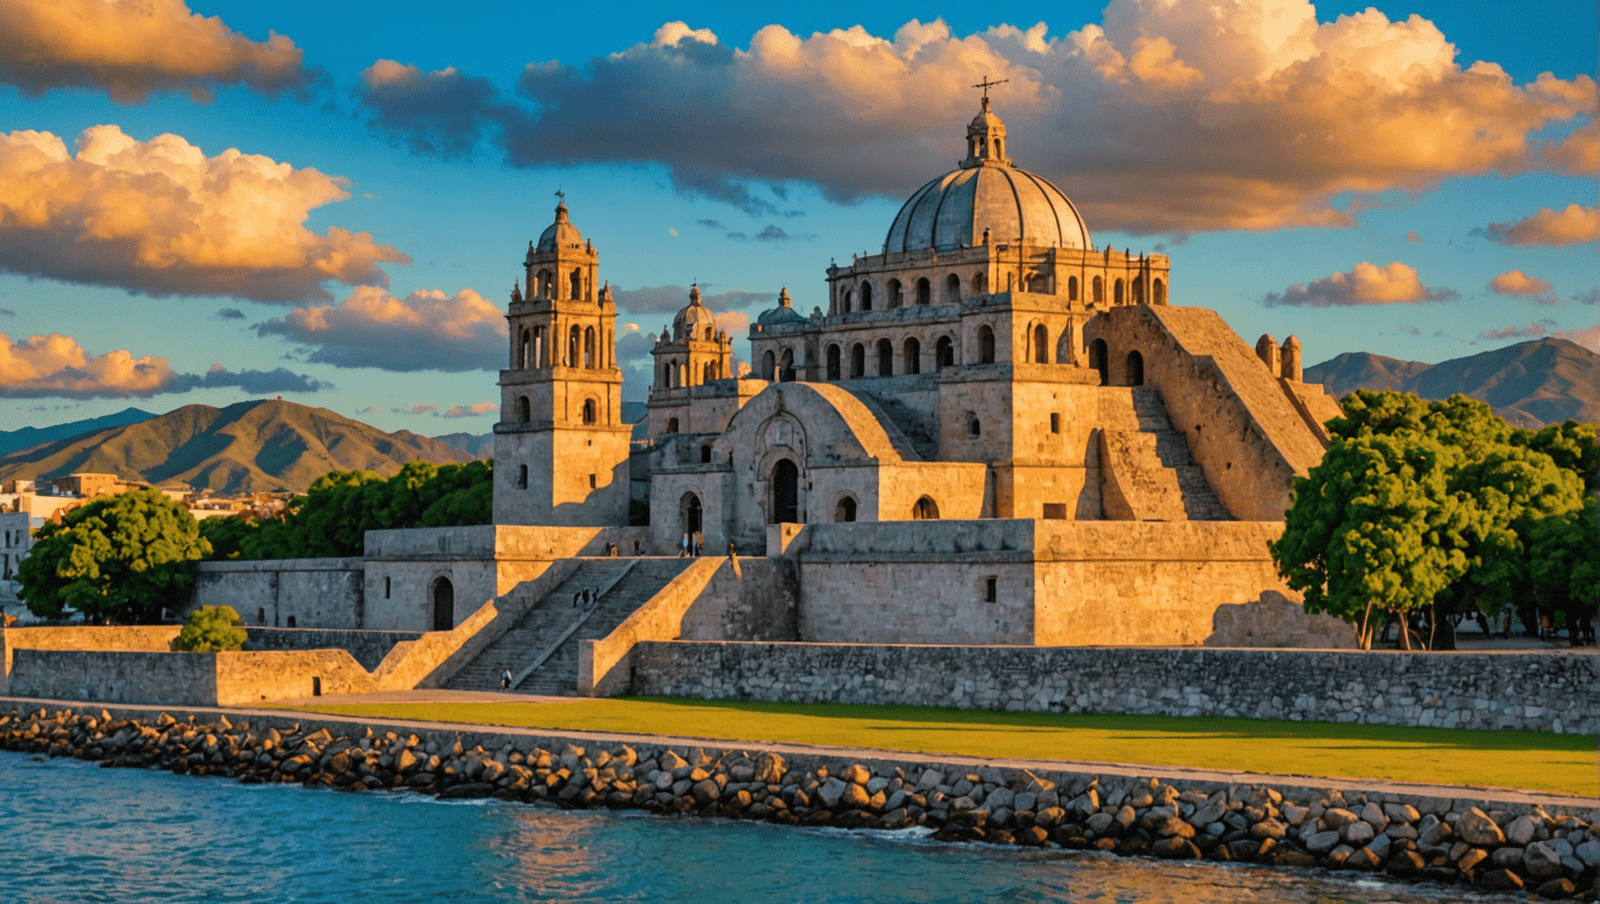 découvrez le mexique à travers notre guide de voyage complet, regorgeant de conseils et d'itinéraires pour explorer ce magnifique pays à la culture riche et variée.